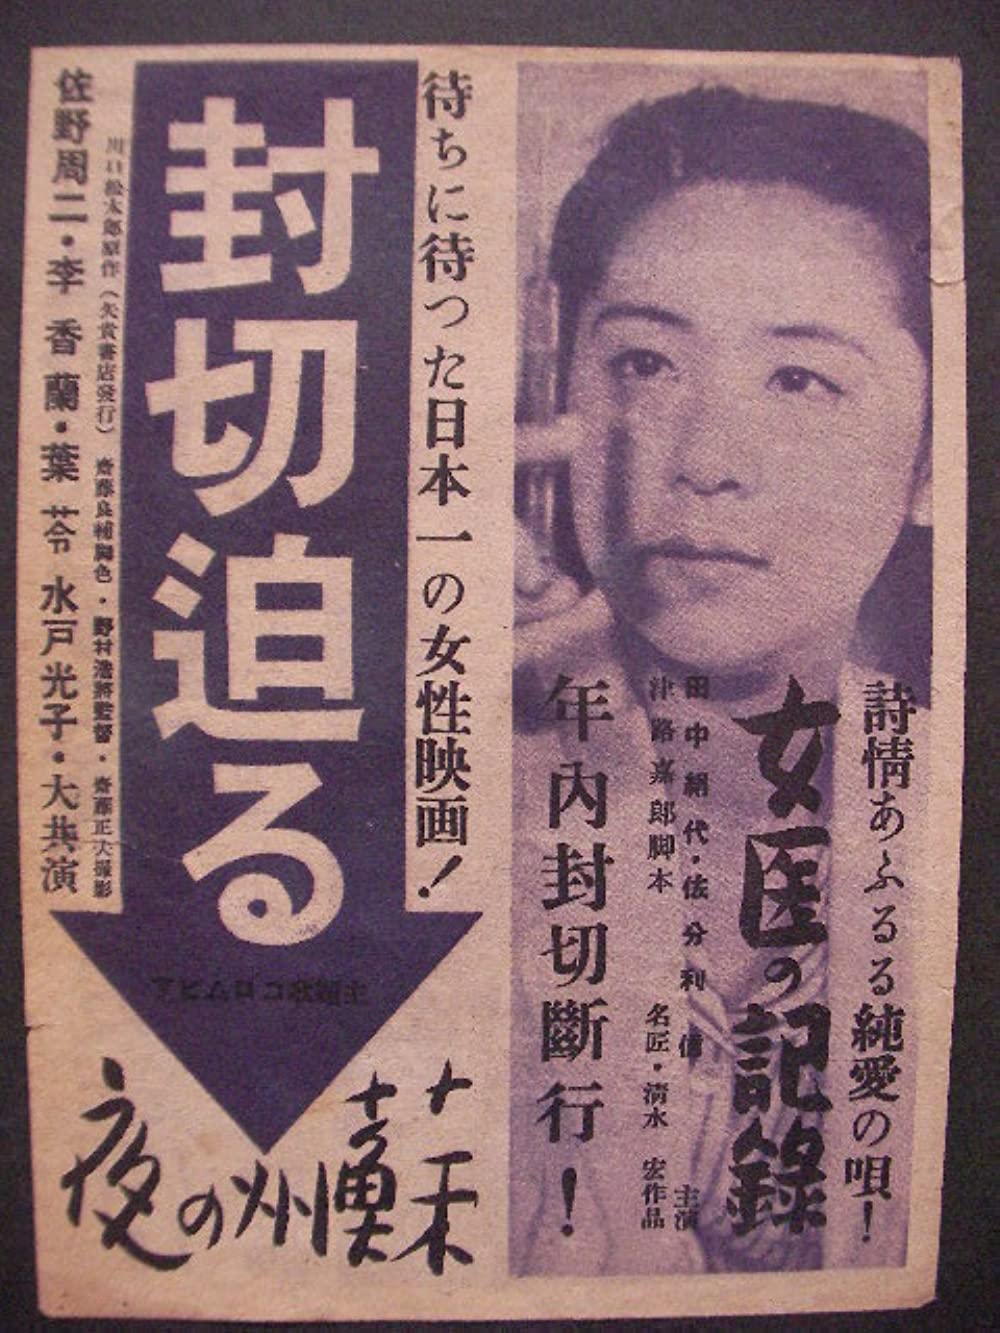 دانلود فیلم Joi no kiroku 1941